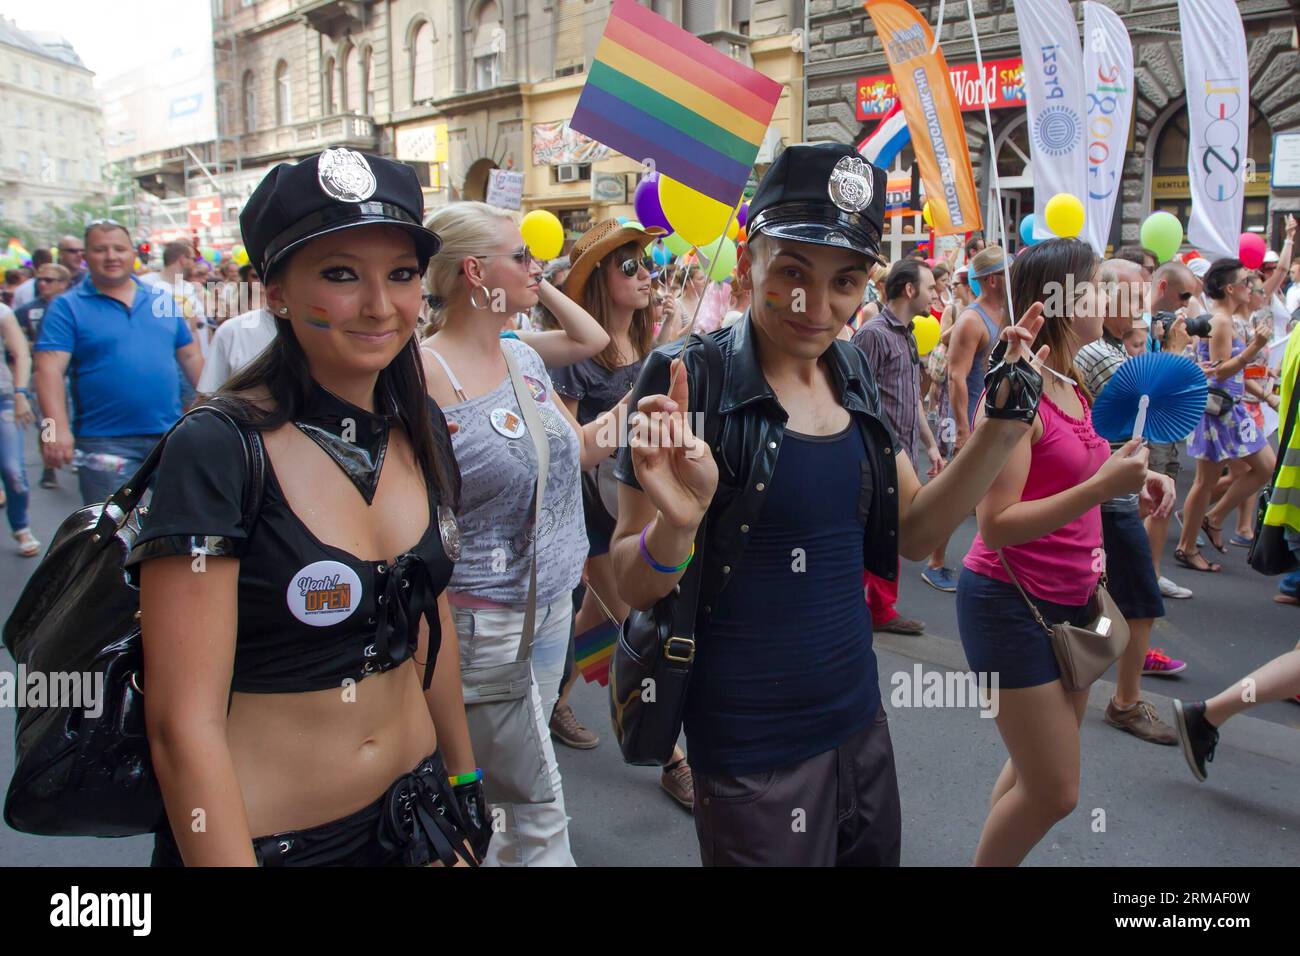 (140706) -- BUDAPEST, 5. Juli 2014 (Xinhua) -- Teilnehmer des Gay Pride Parade march quer durch die Stadt in Budapest, Ungarn, 5. Juli 2014. Das Thema der Parade war Budapest Pride: 365 , was bedeutet, dass die Teilnehmer das ganze Jahr hindurch um Akzeptanz strebten, nicht nur an diesem Tag. Verschiedene Gruppen, die behaupteten, Familienwerte zu vertreten, hielten Gegendemonstrationen entlang der Parade ab. Die Polizei verhaftete zwei Demonstranten. (Xinhua/Attila Volgyi) (ctt) UNGARN-BUDAPEST-GAY PRIDE Parade PUBLICATIONxNOTxINxCHN Budapest 5. Juli 2014 XINHUA Teilnehmer des Gay Pride Parade March quer durch die Stadt in Stockfoto